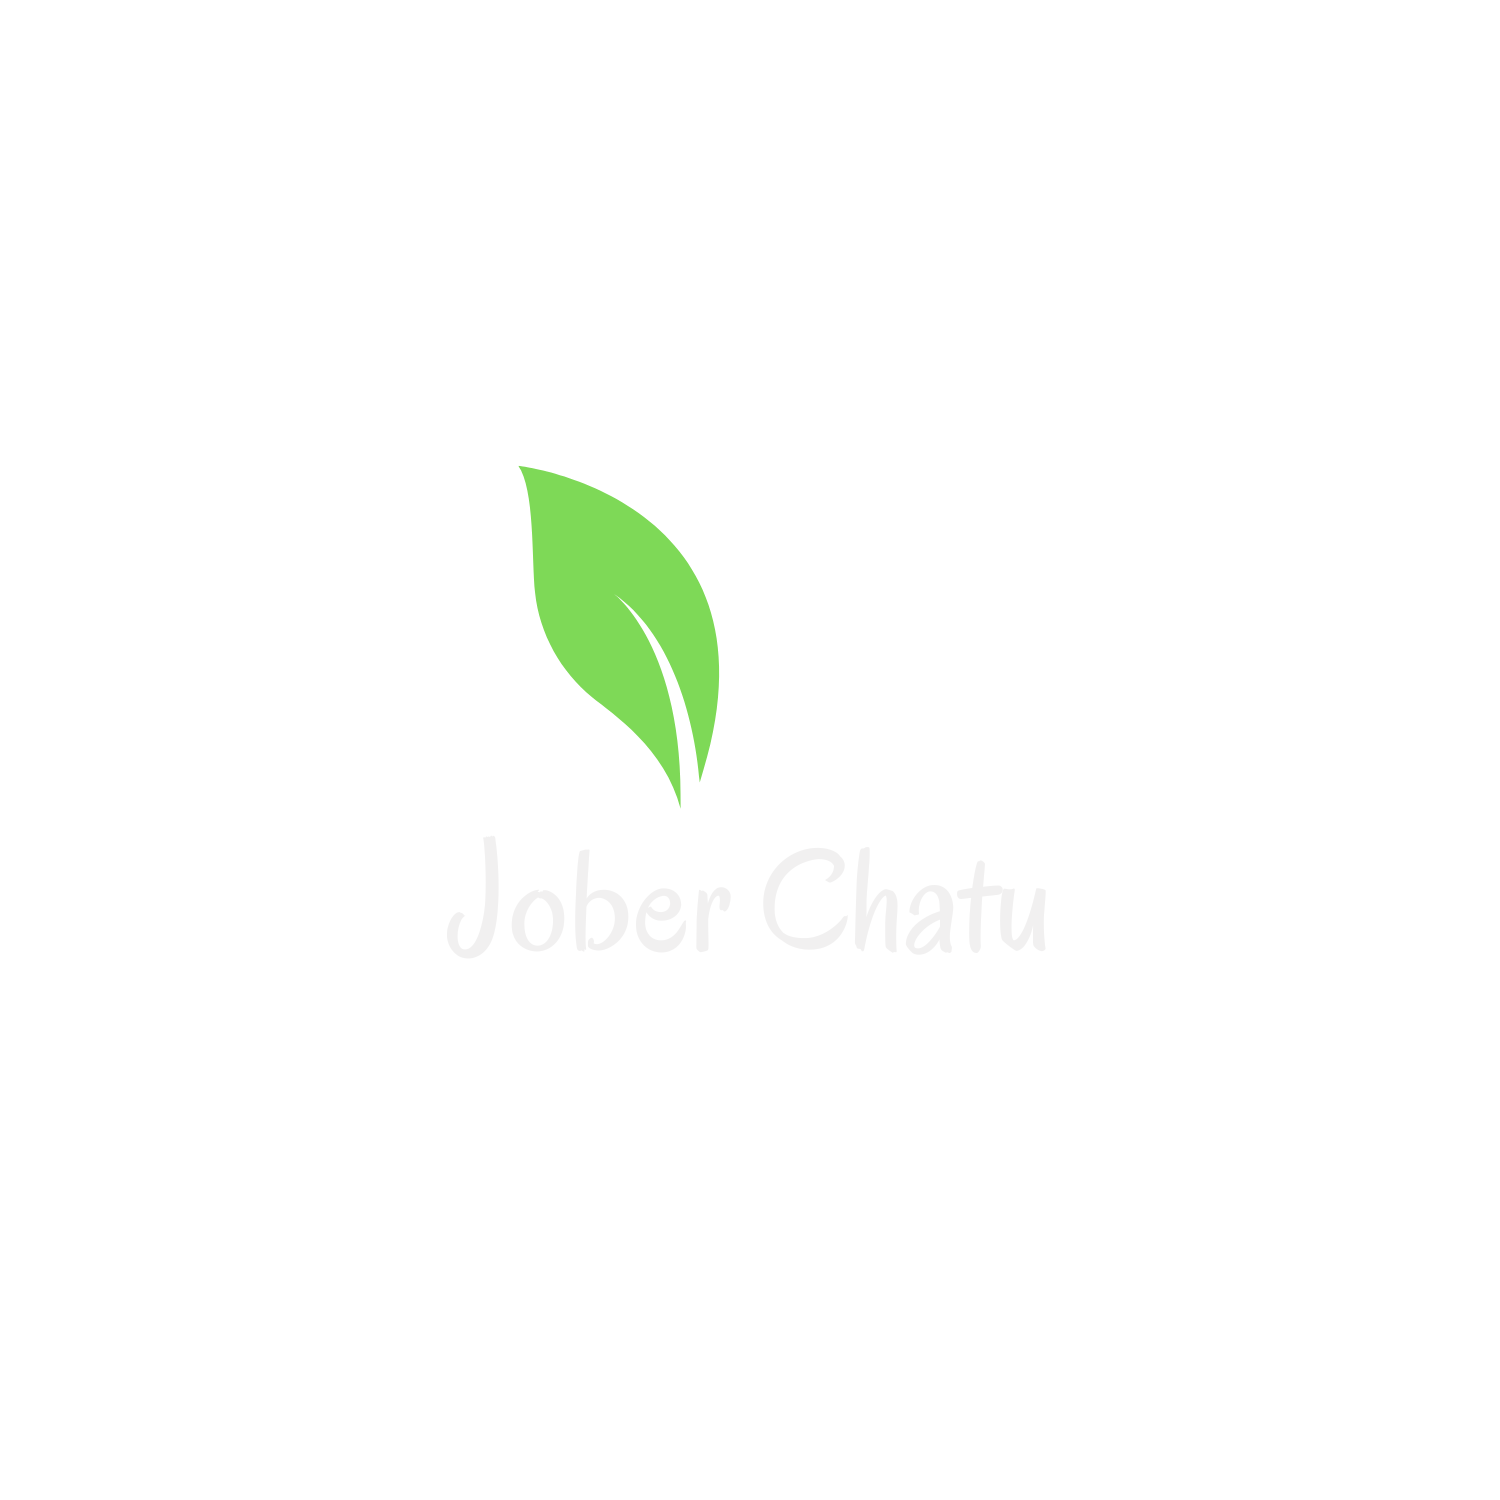 Jober Chatu